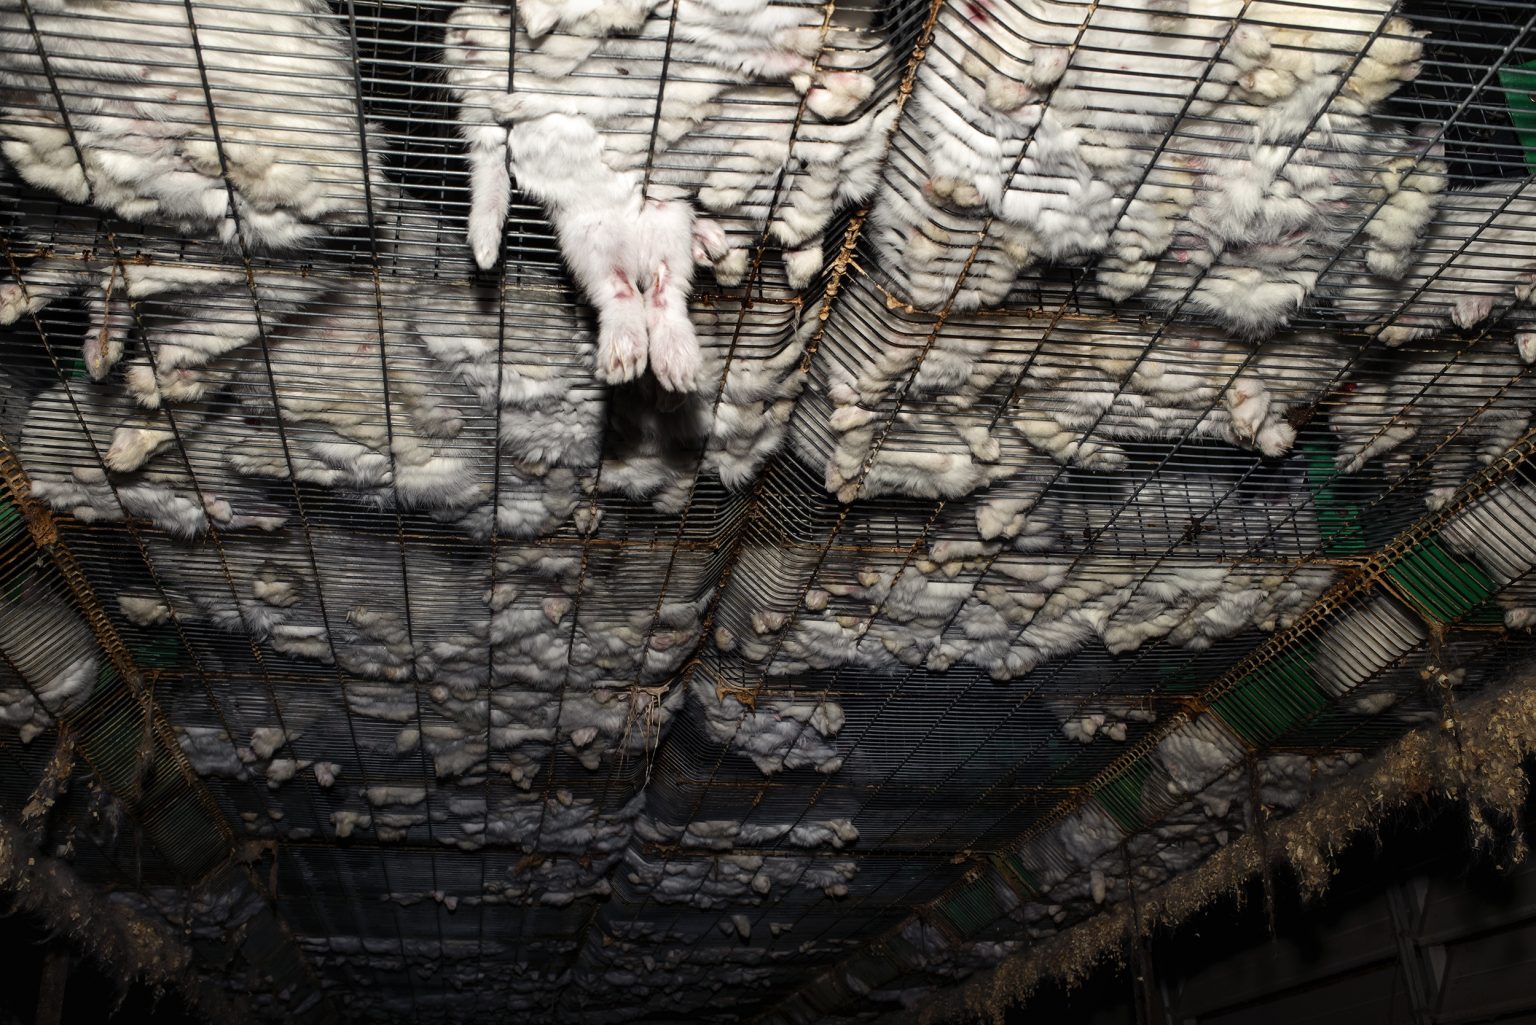 The interior of a rabbit farm. A rabbit got stuck in the cage where it lives. Emilia Romagna. May 2017.

L'interno di un allevamento di conigli. Un coniglio è rimasto incastrato nella gabbia dove vive. Emilia Romagna. Maggio 2017.